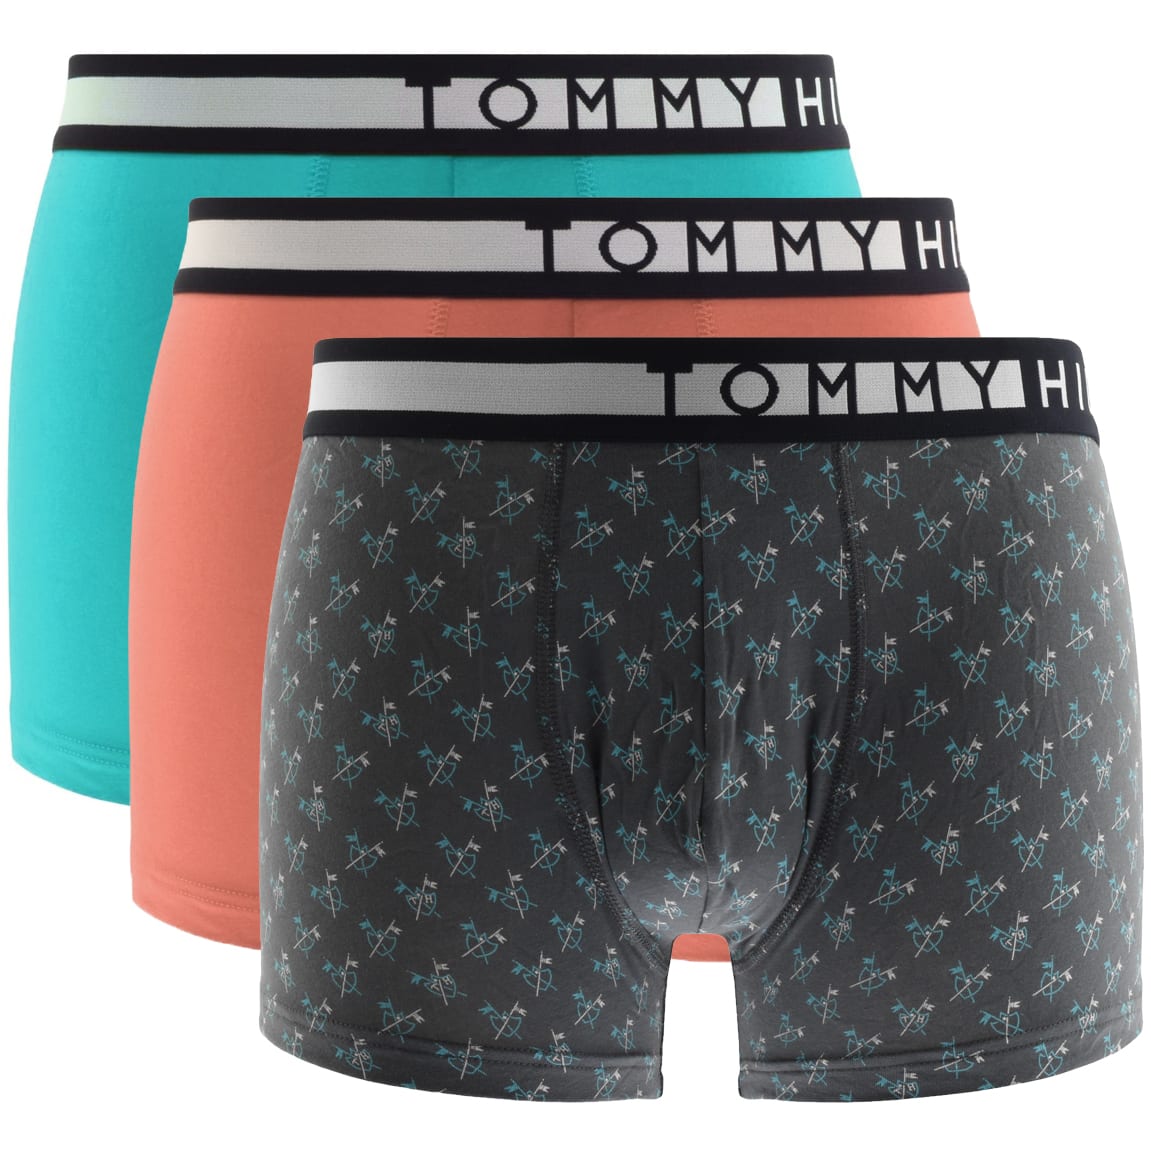 tommy hilfiger underwear trunks